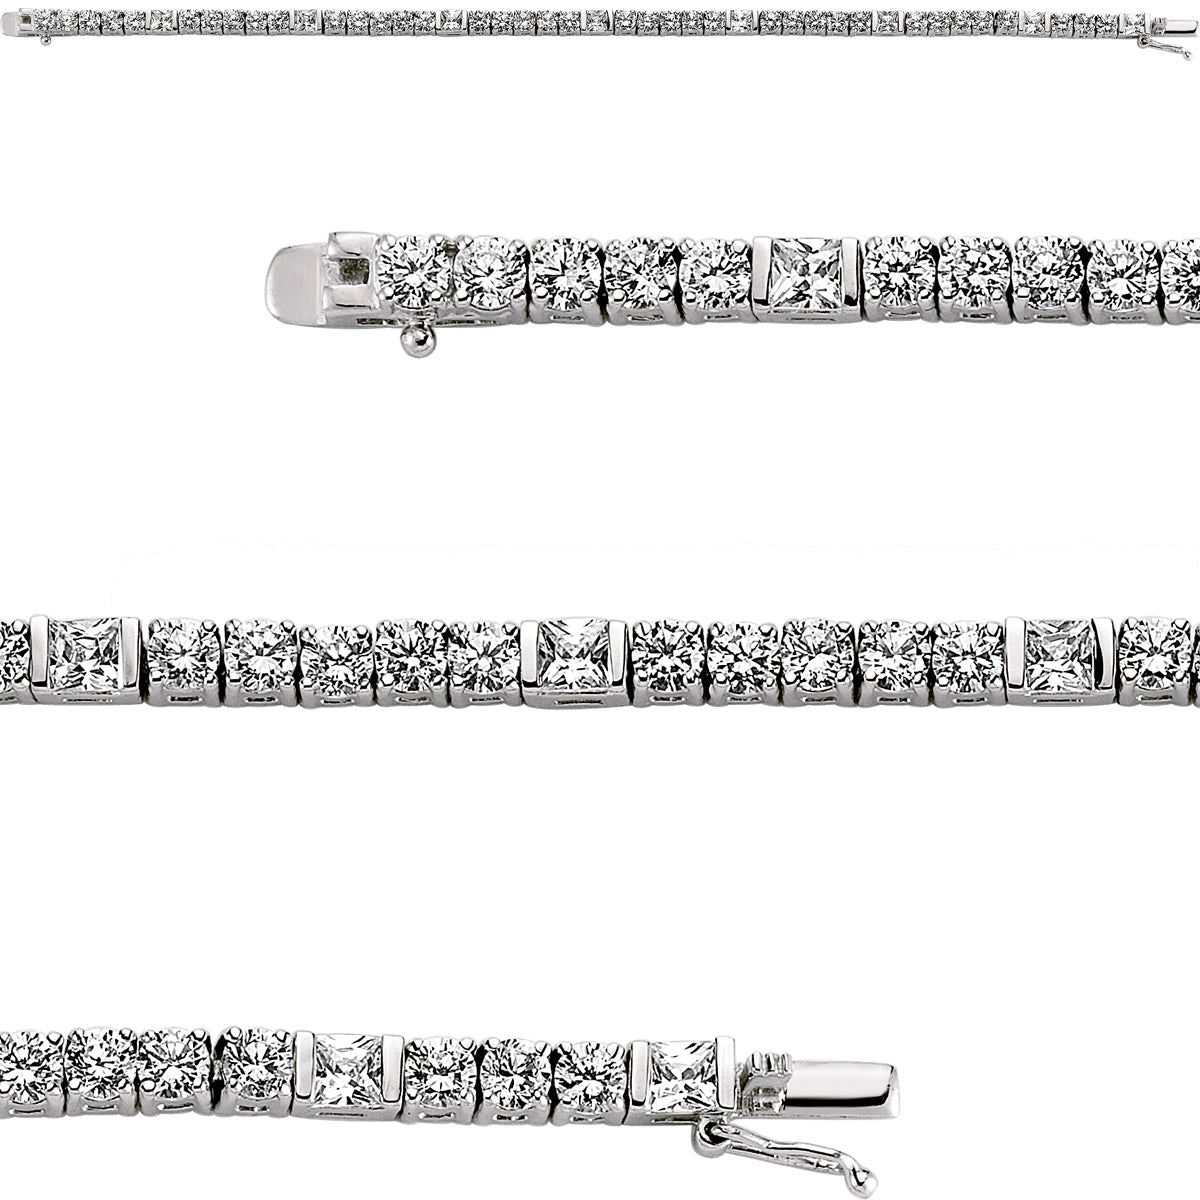 Silver  Princess Cut CZ 5 + 1 Tennis Bracelet 4mm 7inch - GVB085